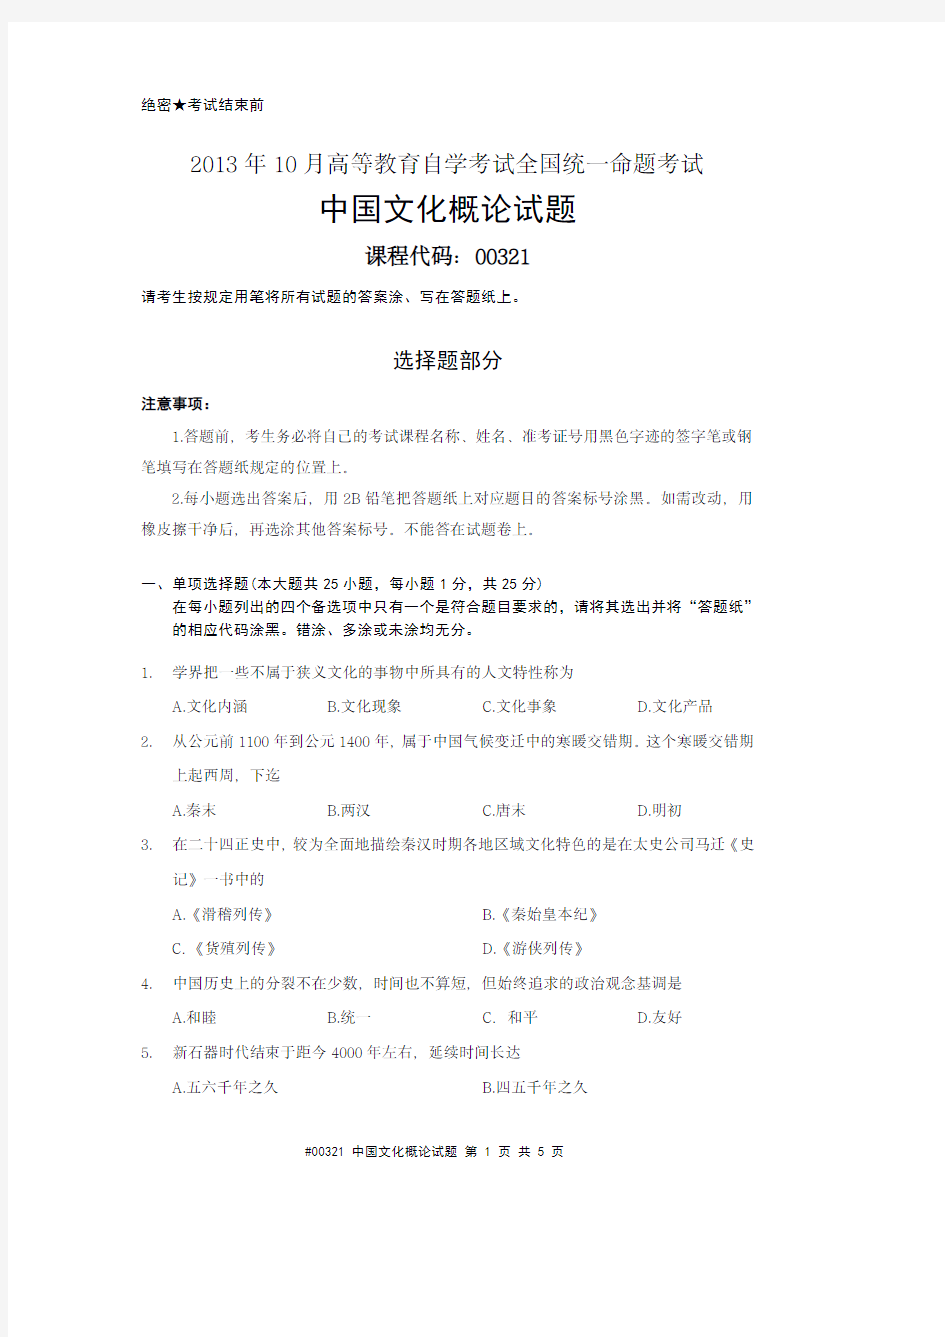 #00321 2013年10月高等教育自学考试全国统一命题考试中国文化概论试题